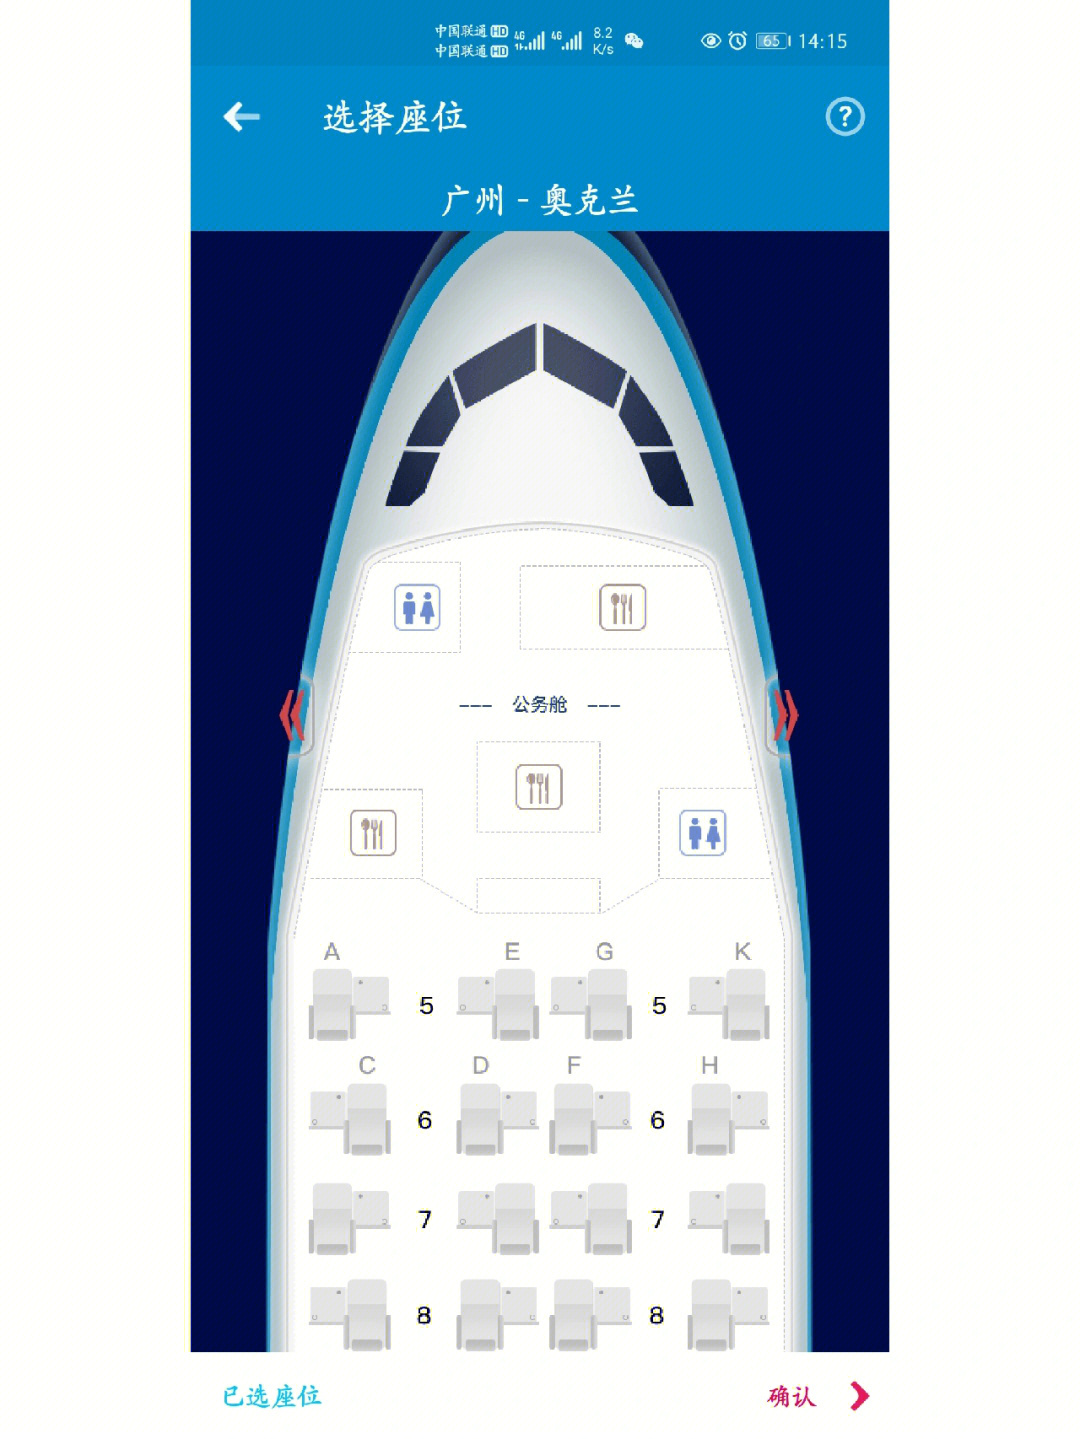 吉祥787清晰座位图图片